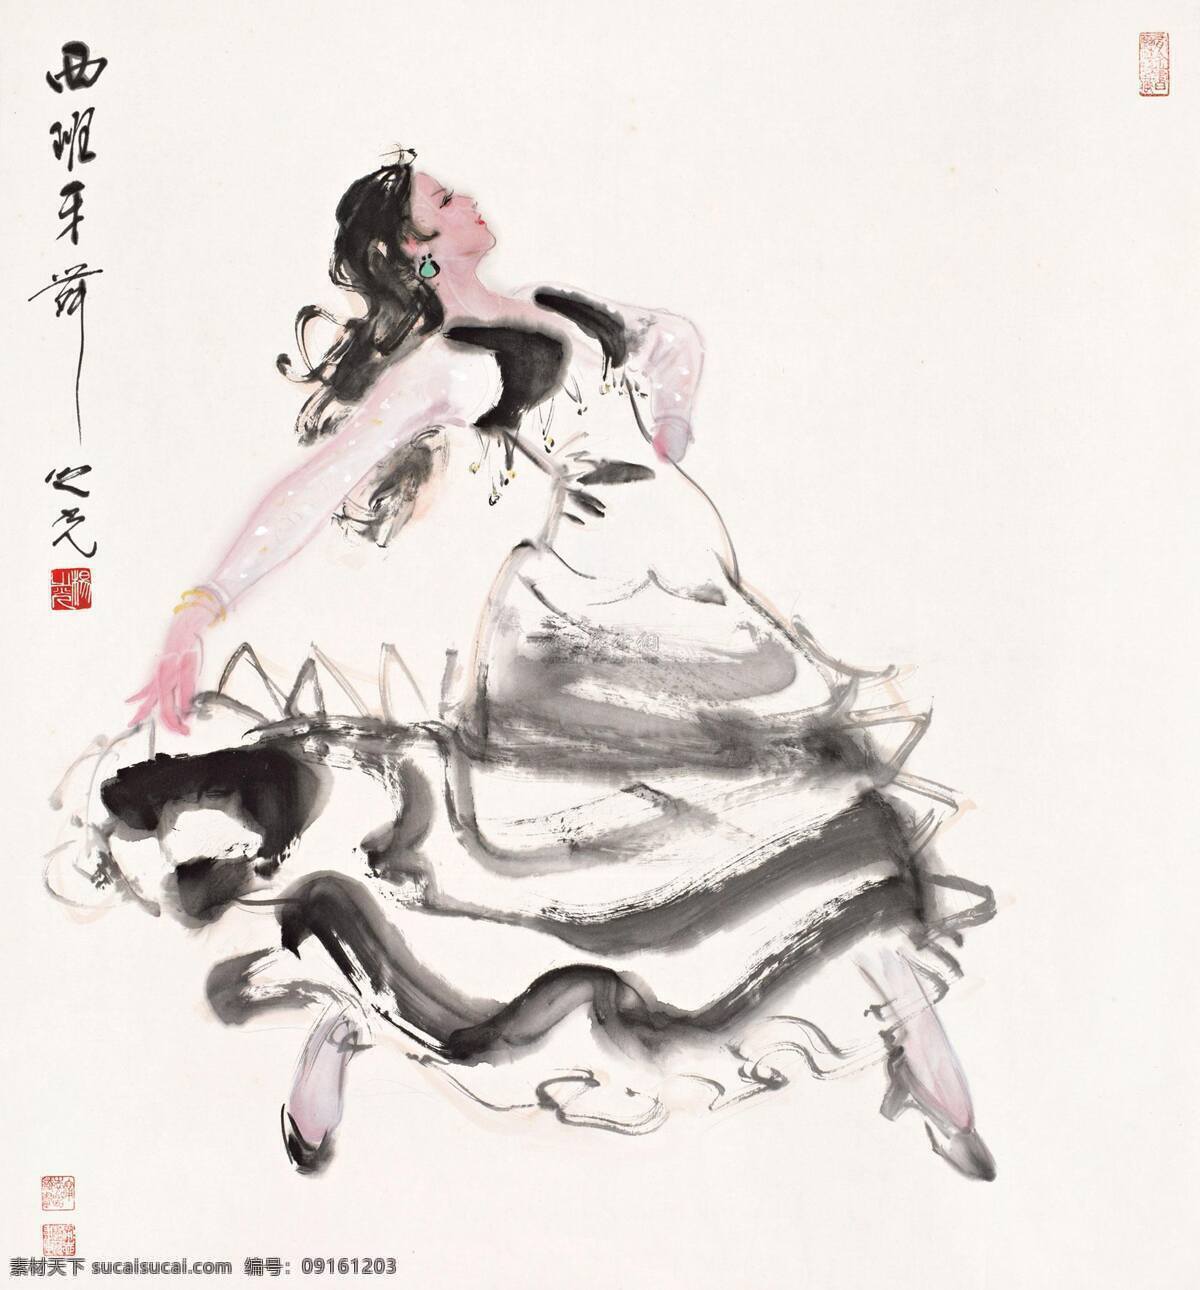 西班牙 舞 异国风情 中国画 水墨人物画 民间舞蹈 杨之光人物画 广告装饰设计 文化艺术